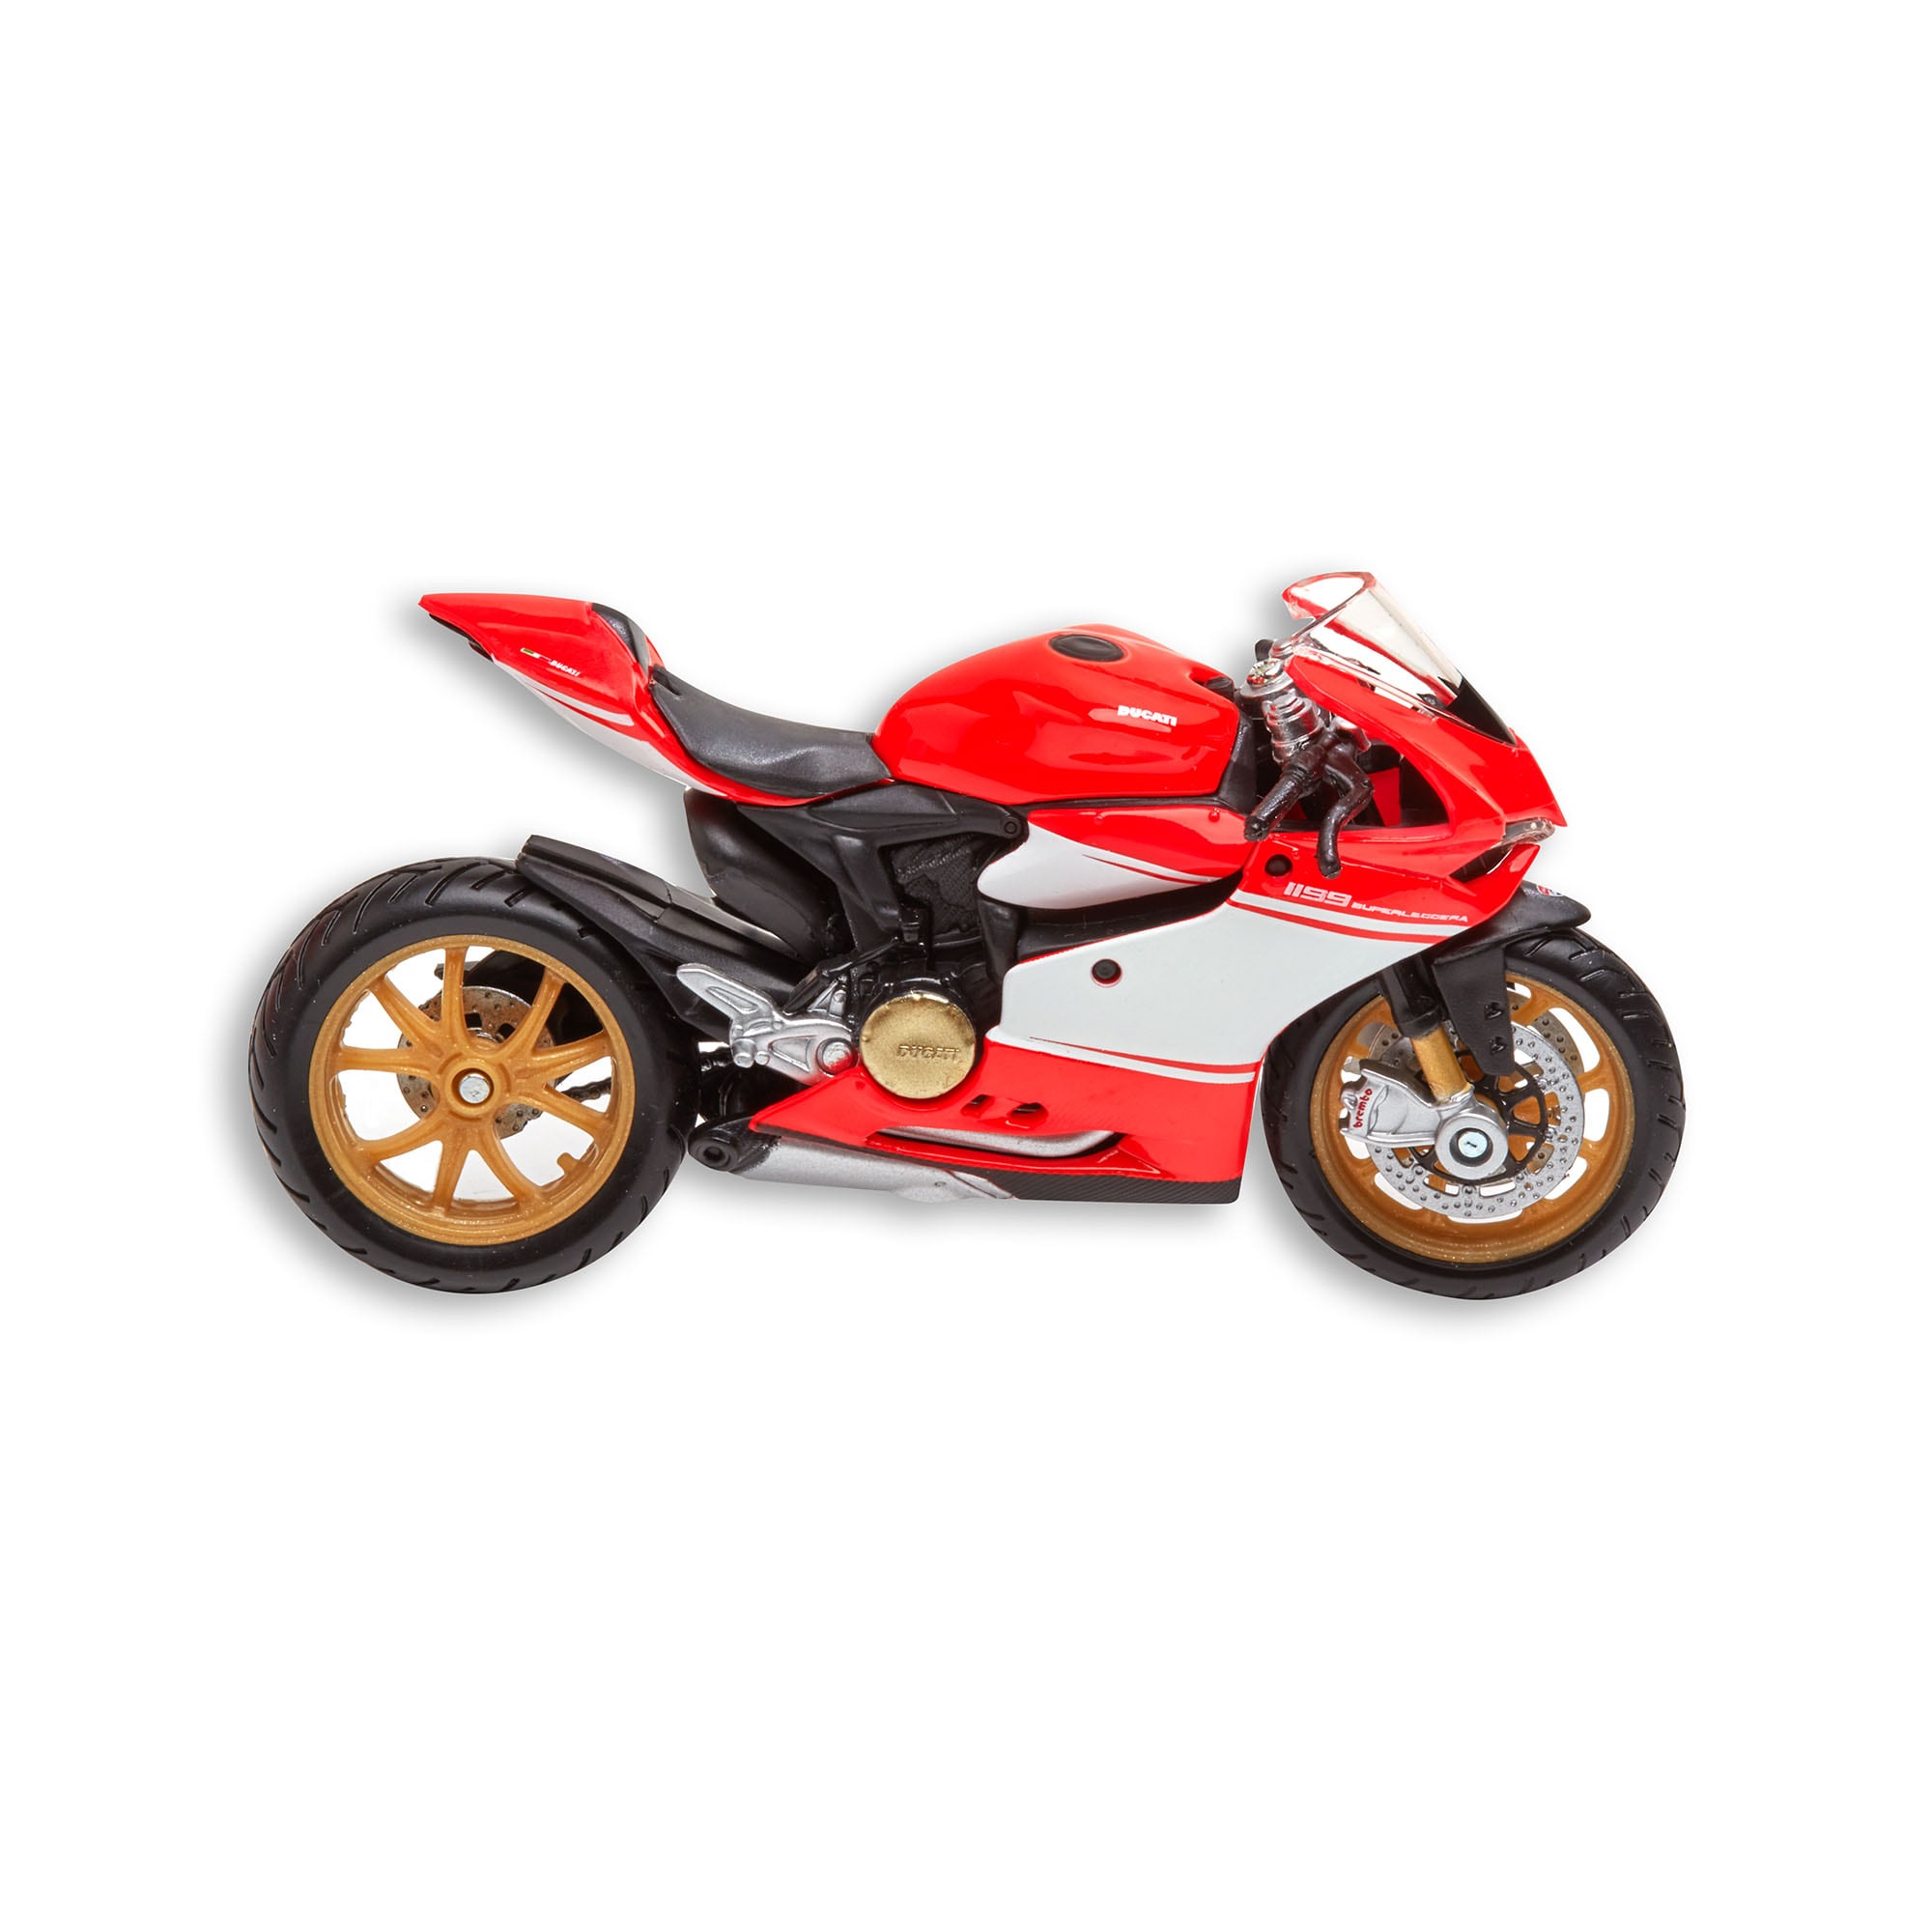 Ducati Superleggera - Bike Model